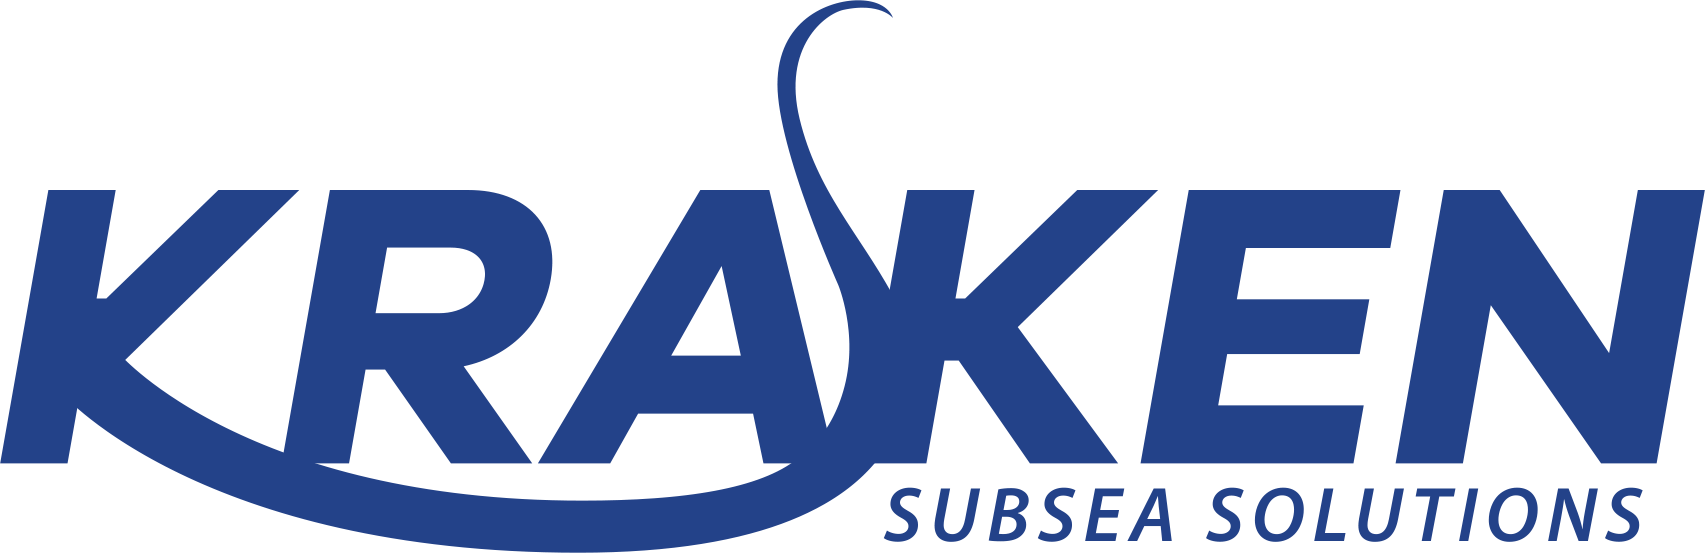 Kraken Subsea - Marine Renewable Energy Specialists